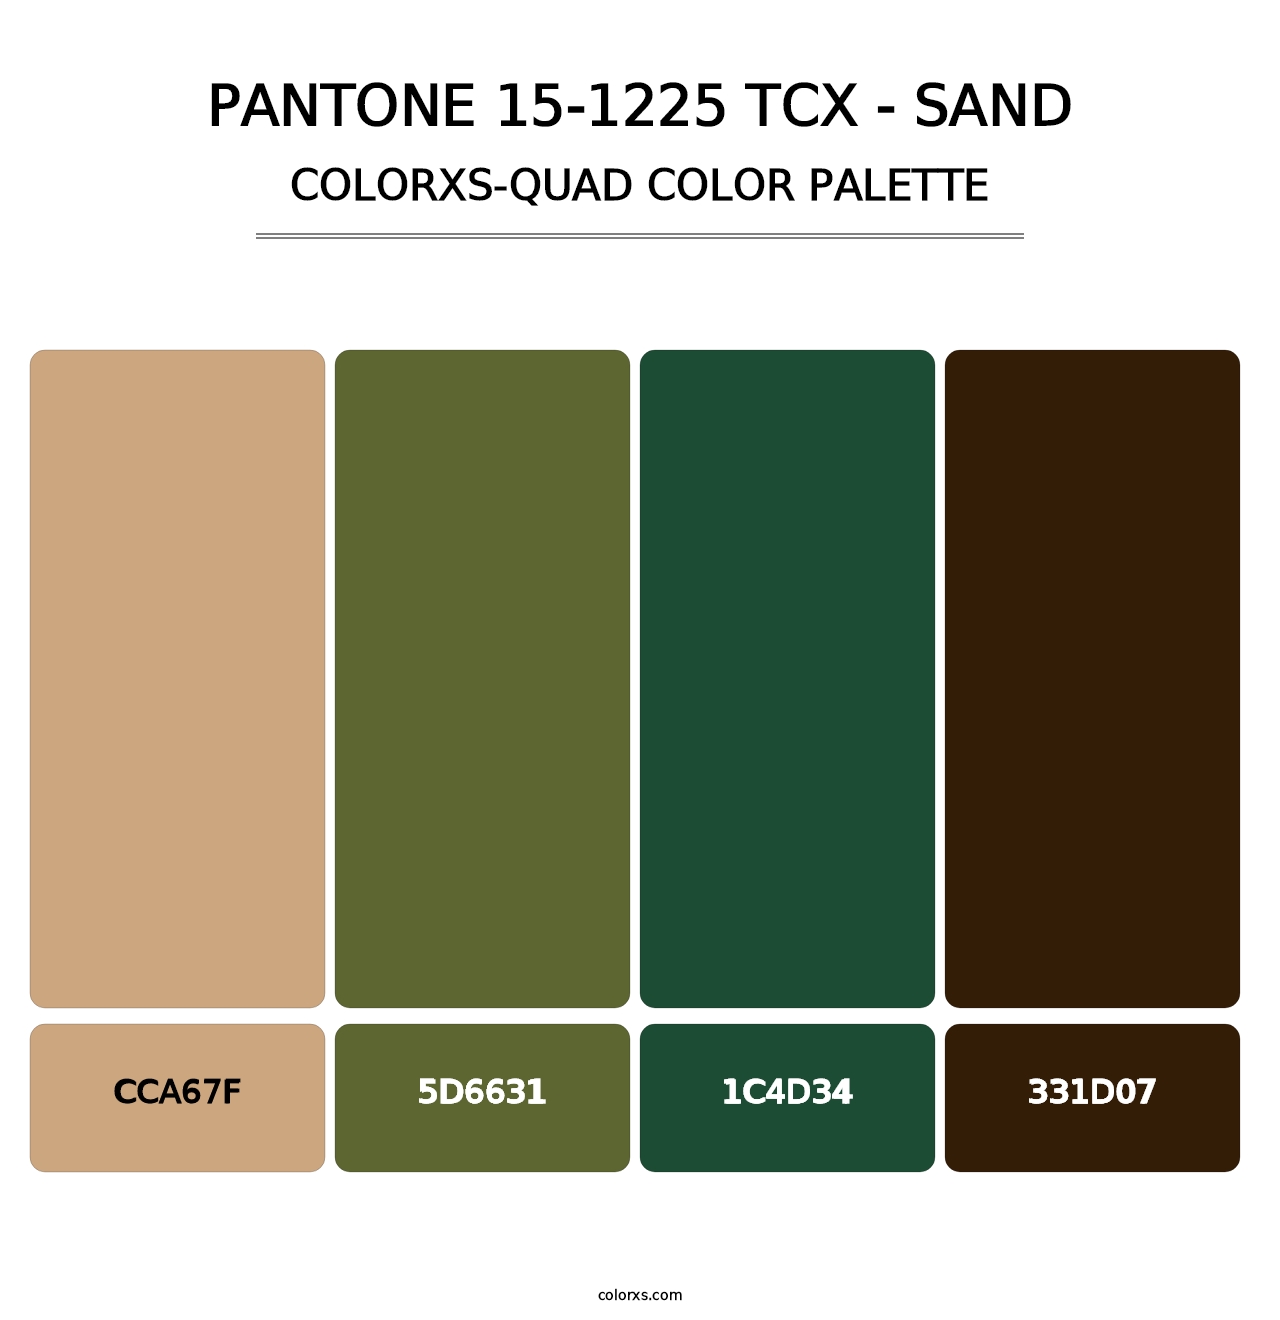 PANTONE 15-1225 TCX - Sand - Colorxs Quad Palette